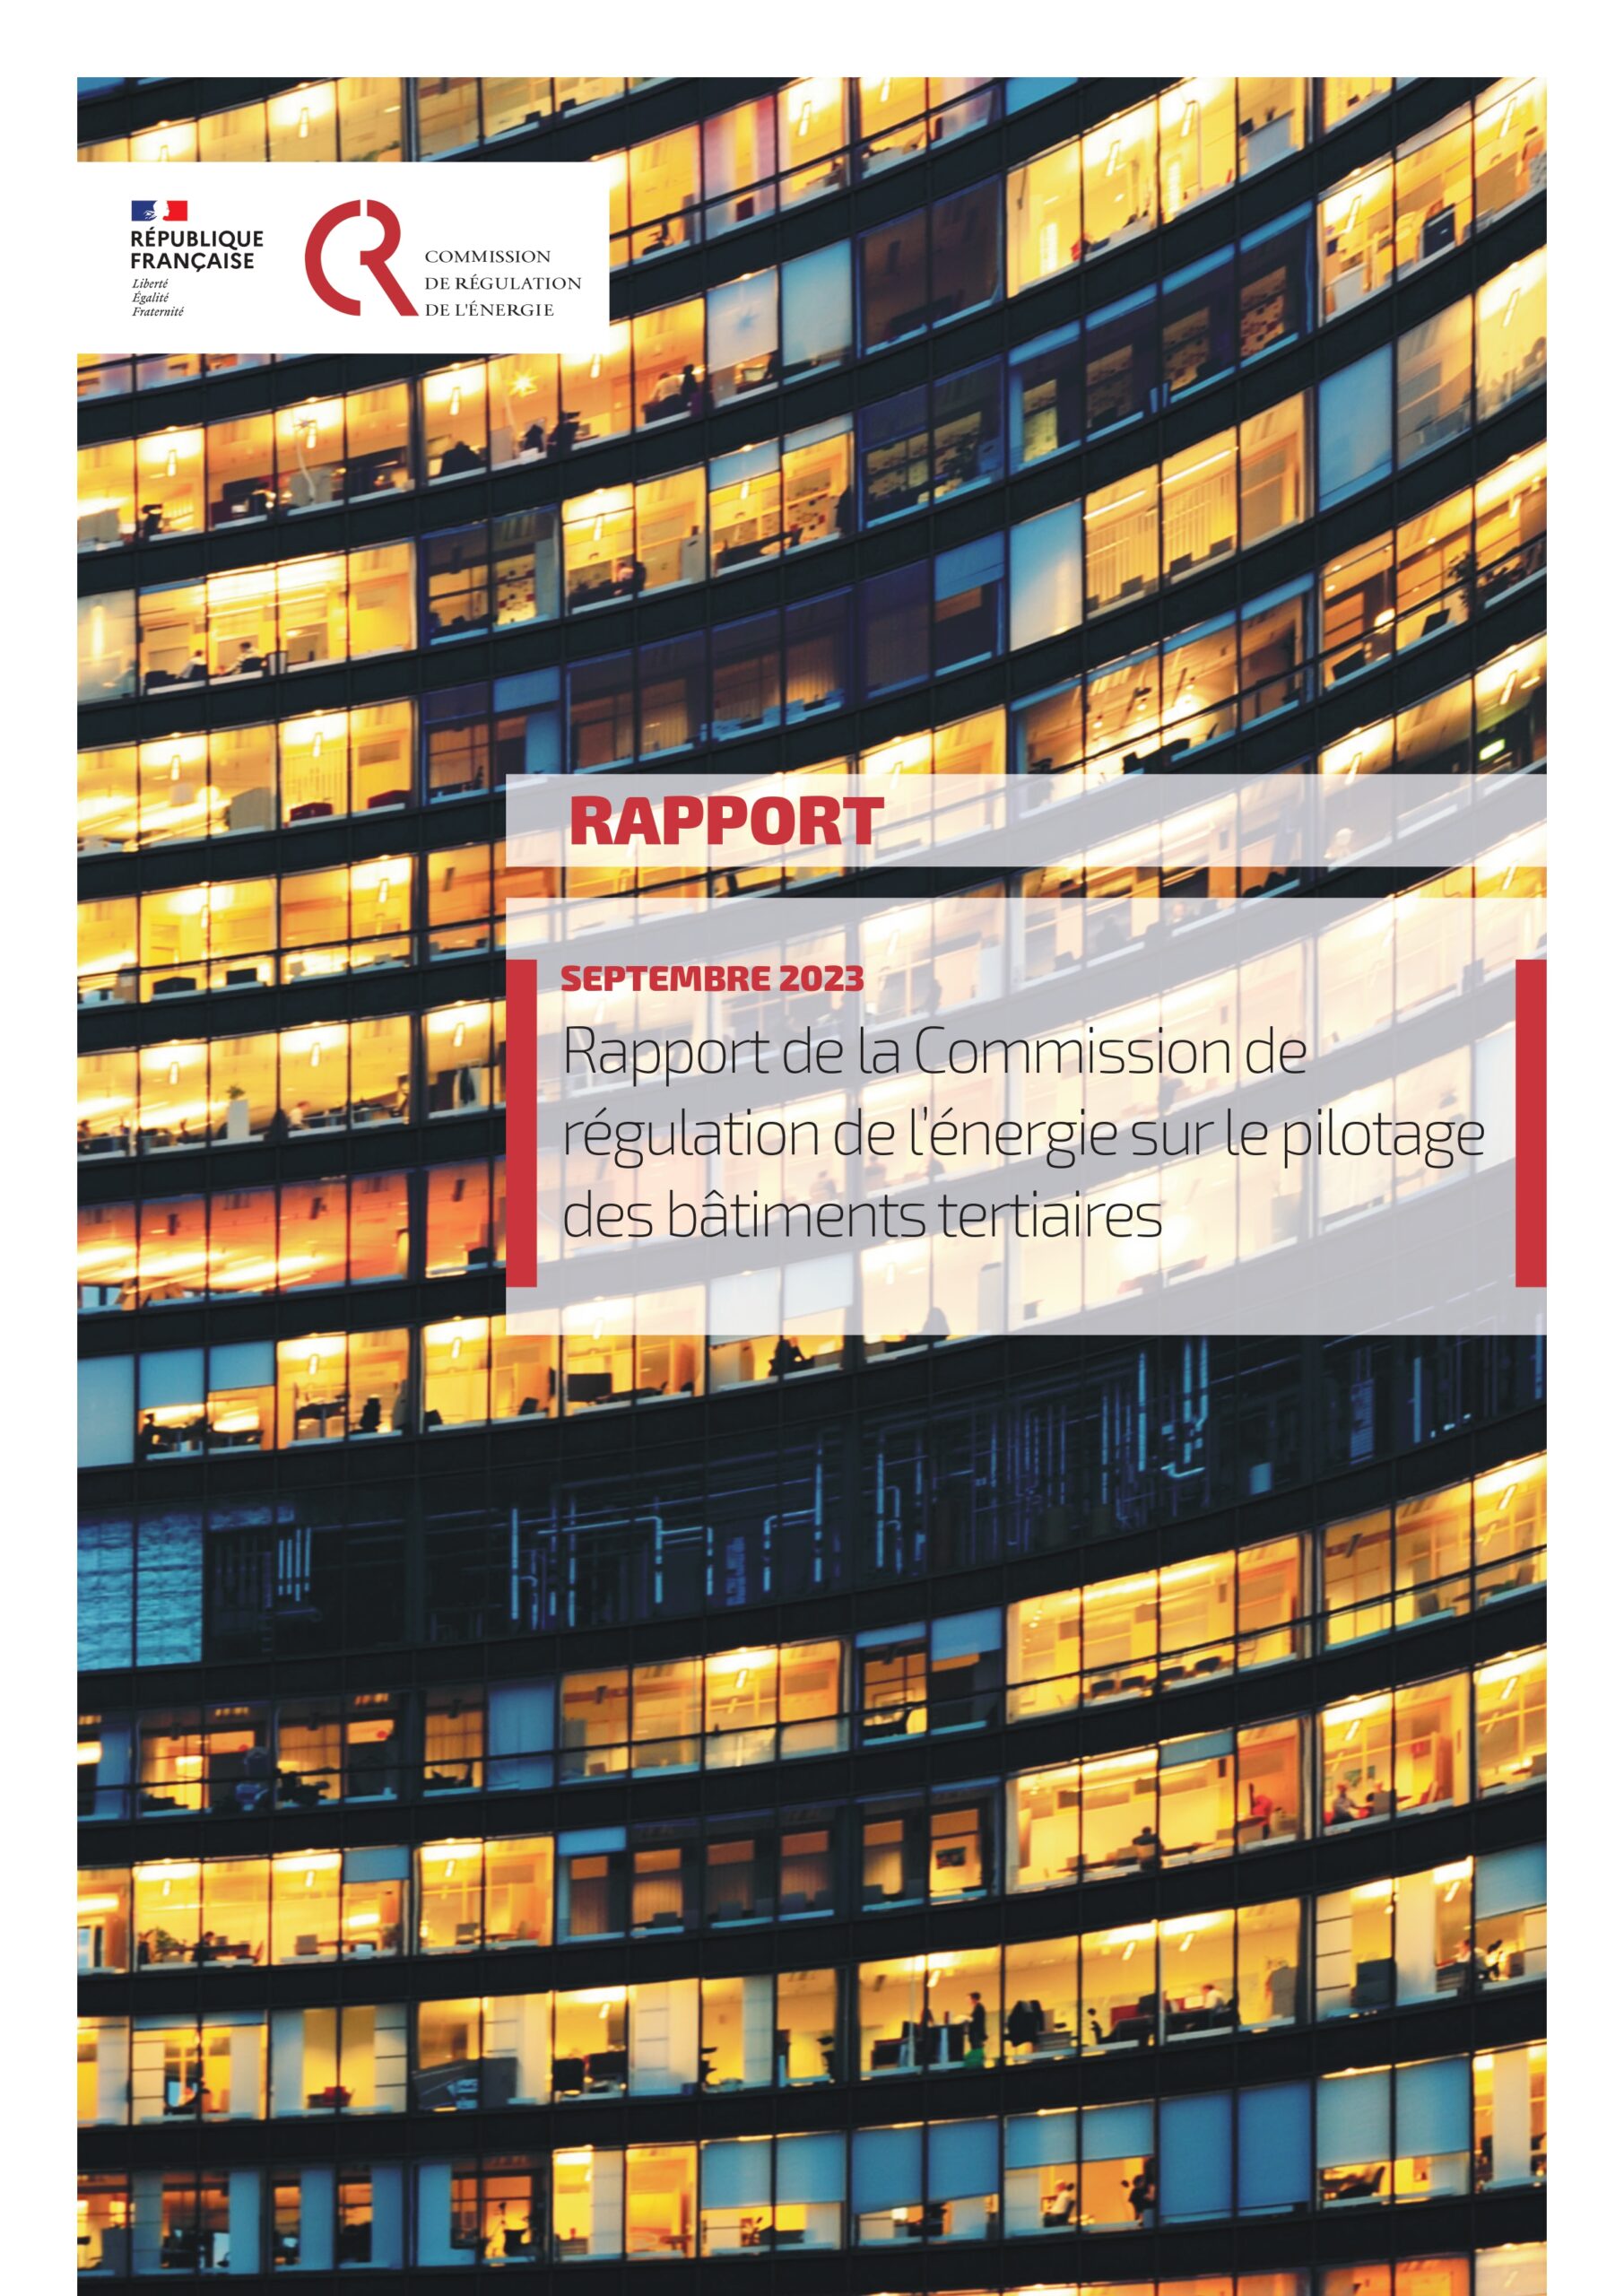 Rapport de la Commission de Régulation de l’Energie (CRE) sur le pilotage des bâtiments tertiaires